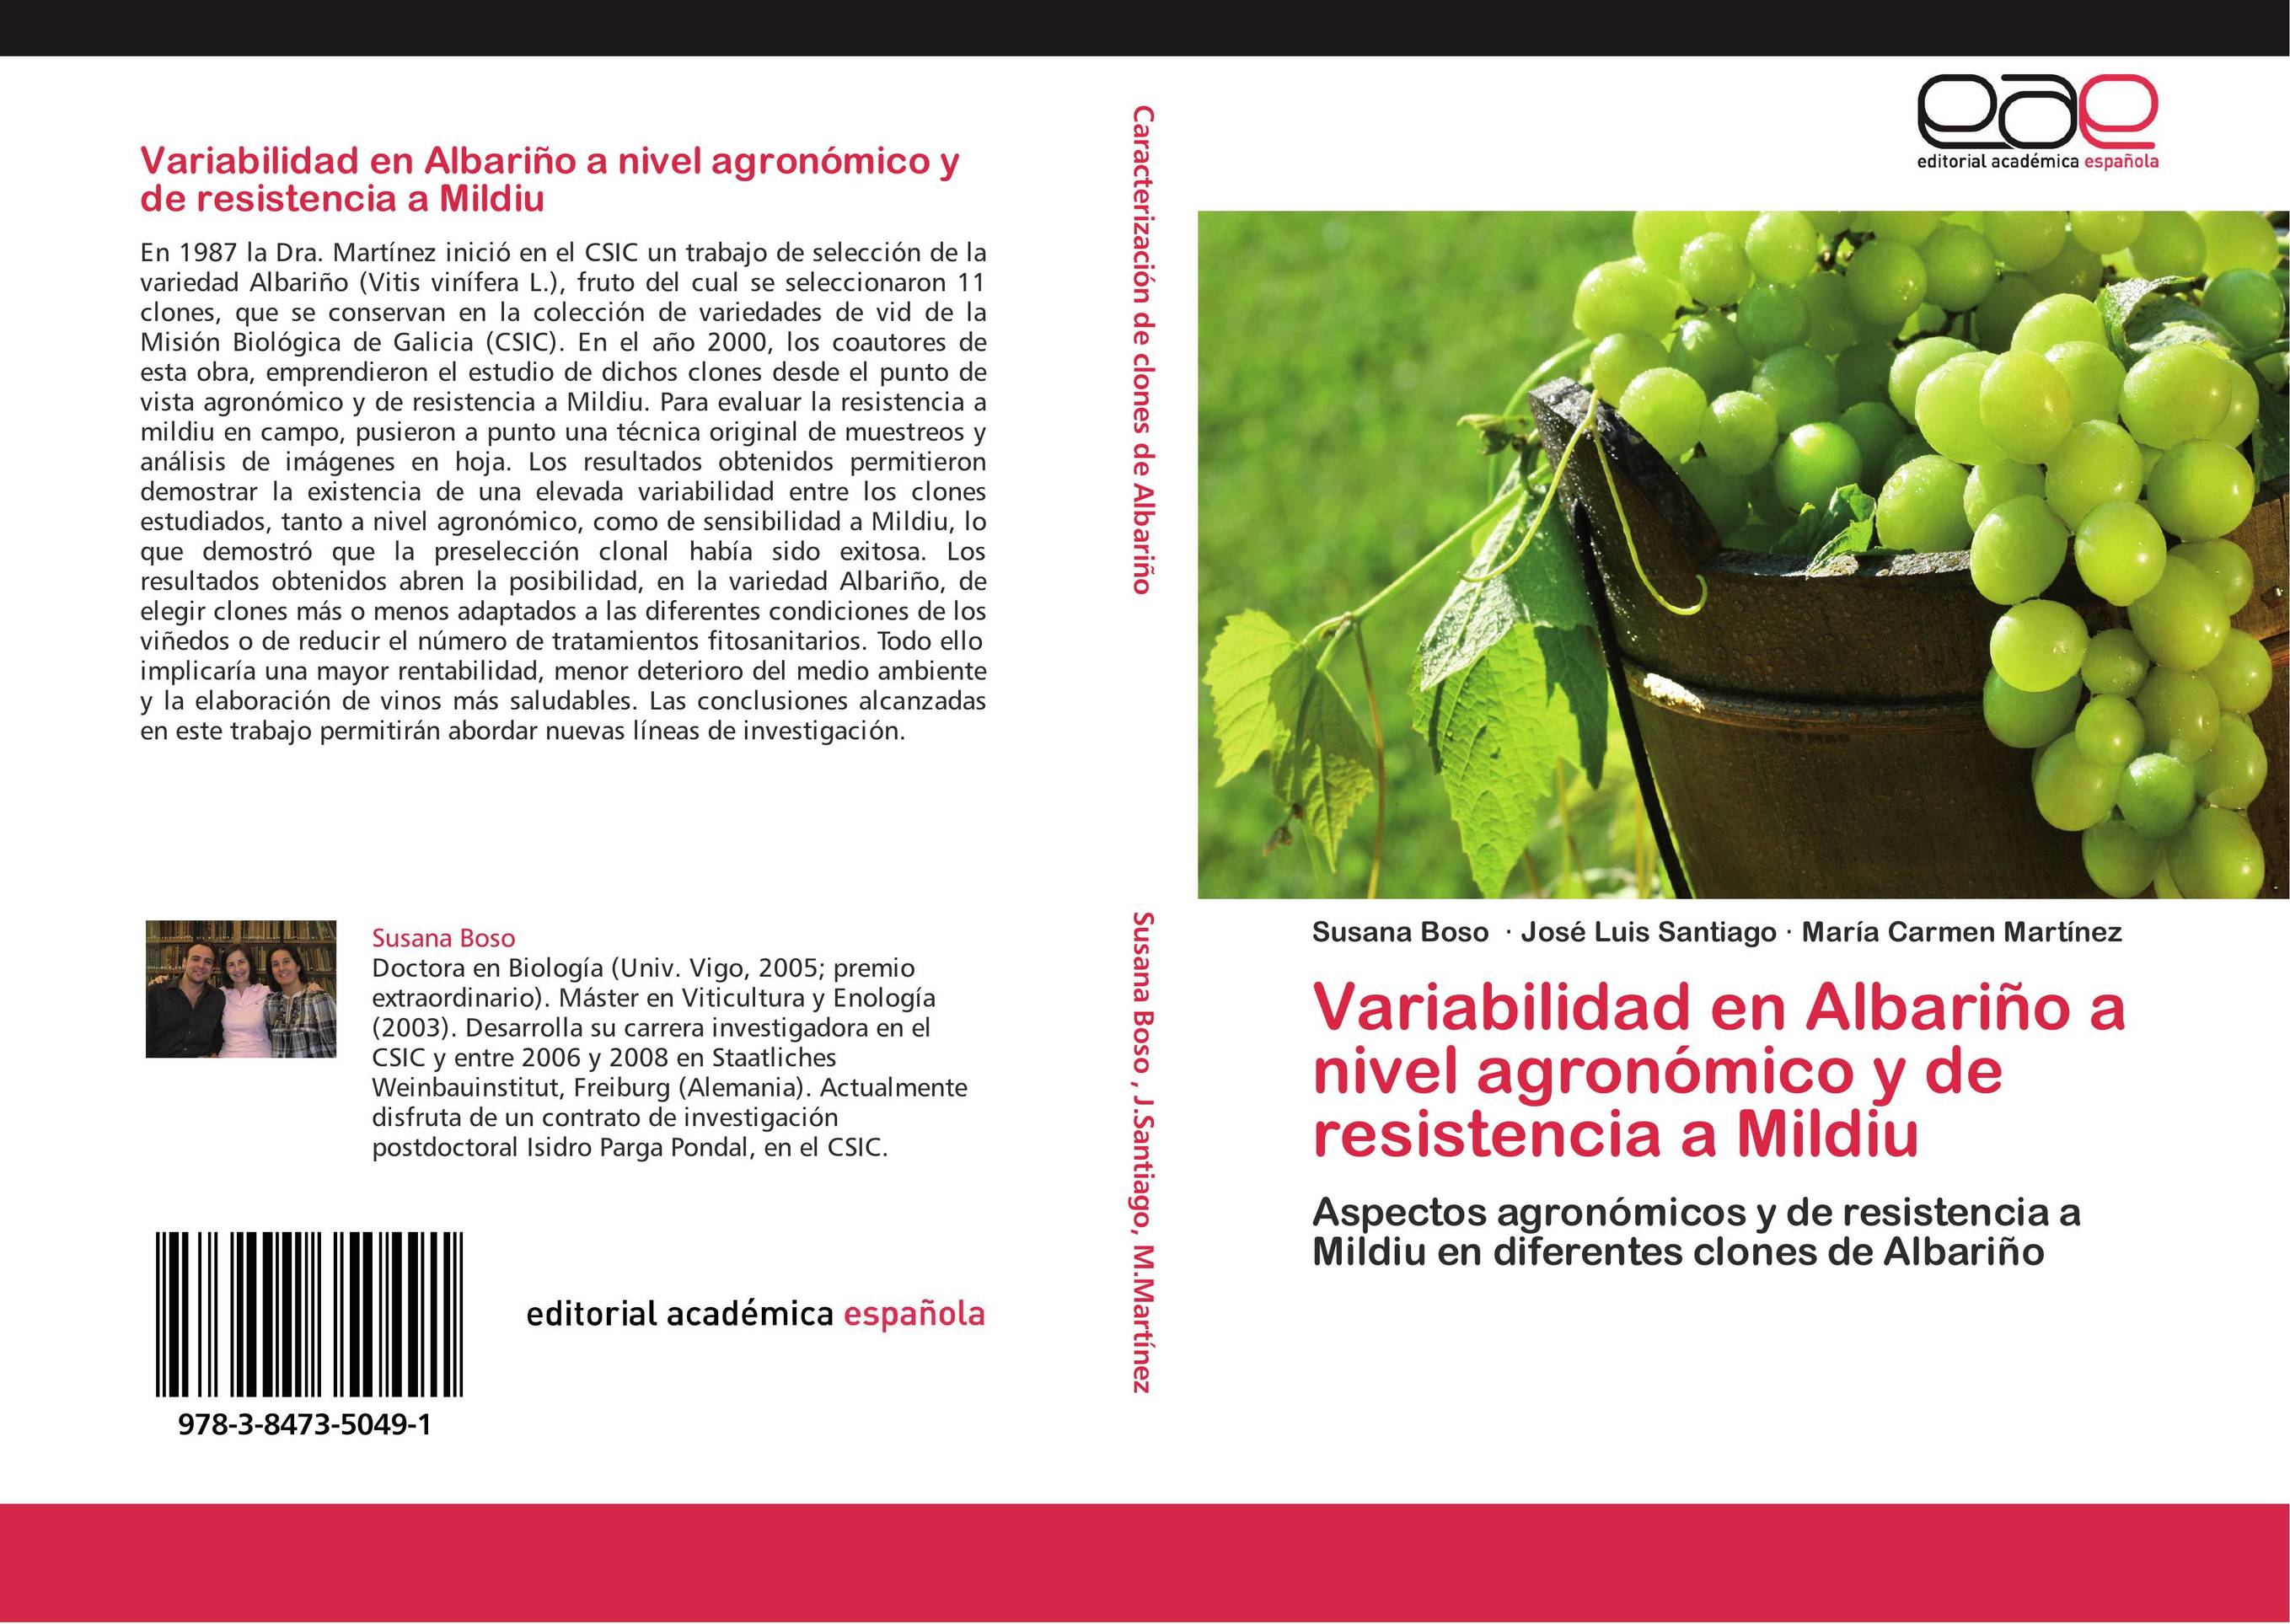 Variabilidad en Albariño a nivel agronómico y de resistencia a Mildiu